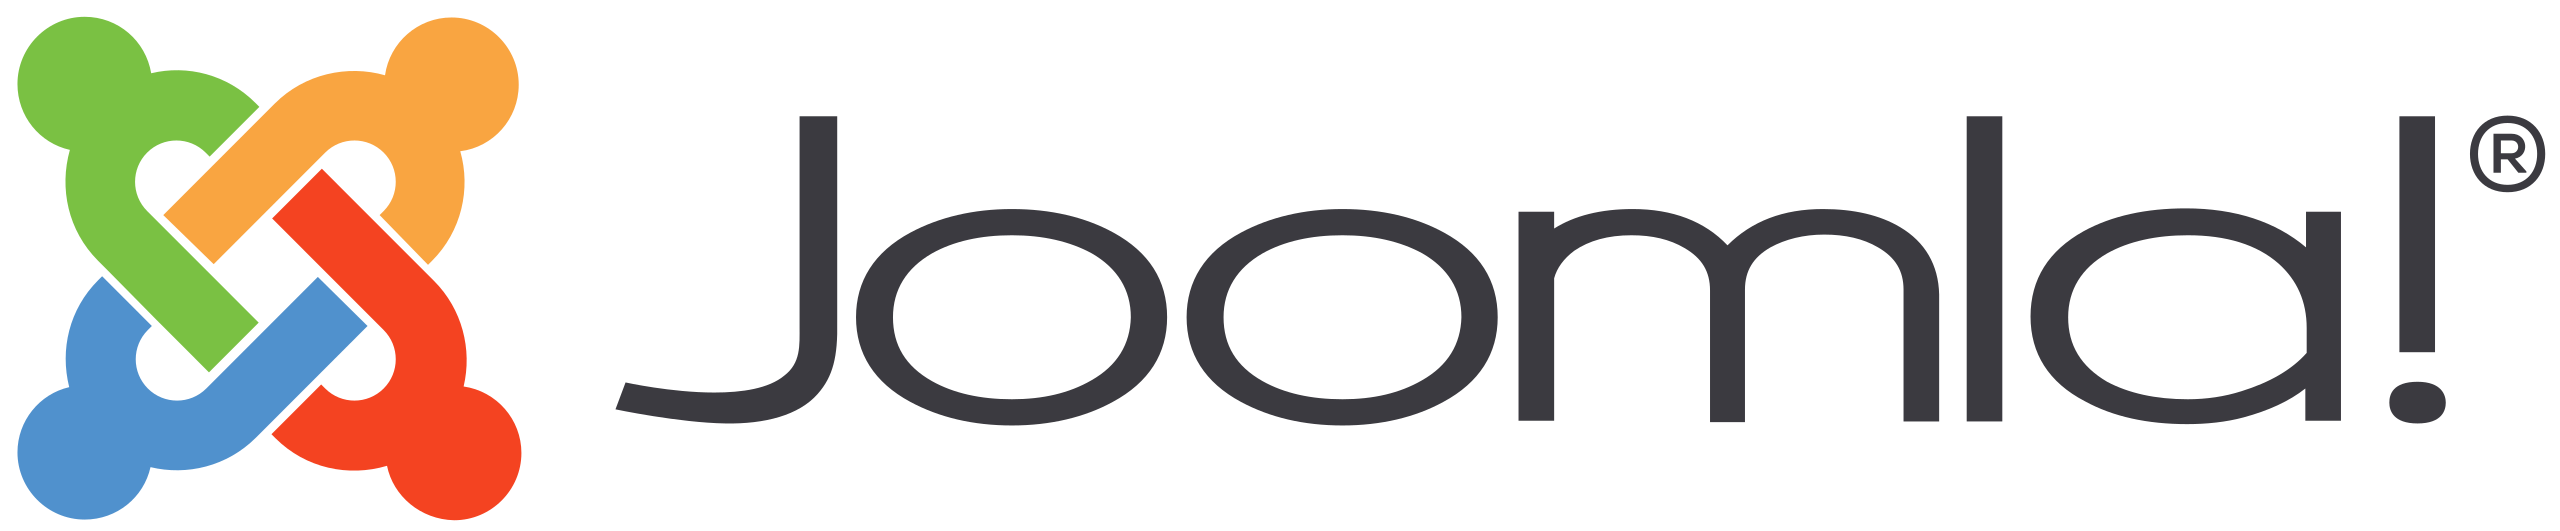 Joomla!-Logo